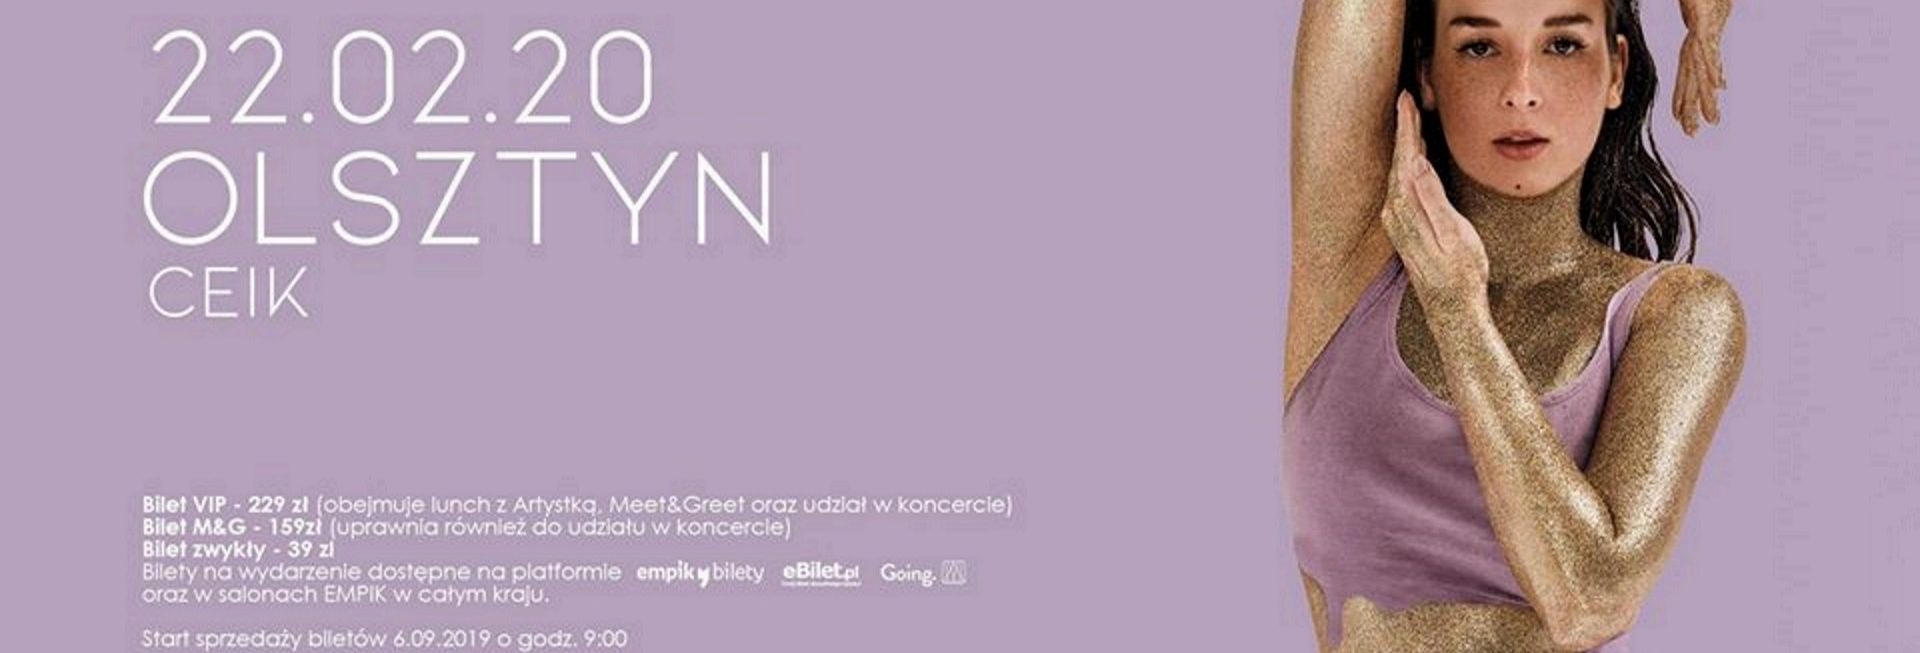 Zdjęcie - plakat na którym widoczna jest postać piosenkarki Sylwii Lipki oraz informacje dotyczące koncertu, daty i miejsca.